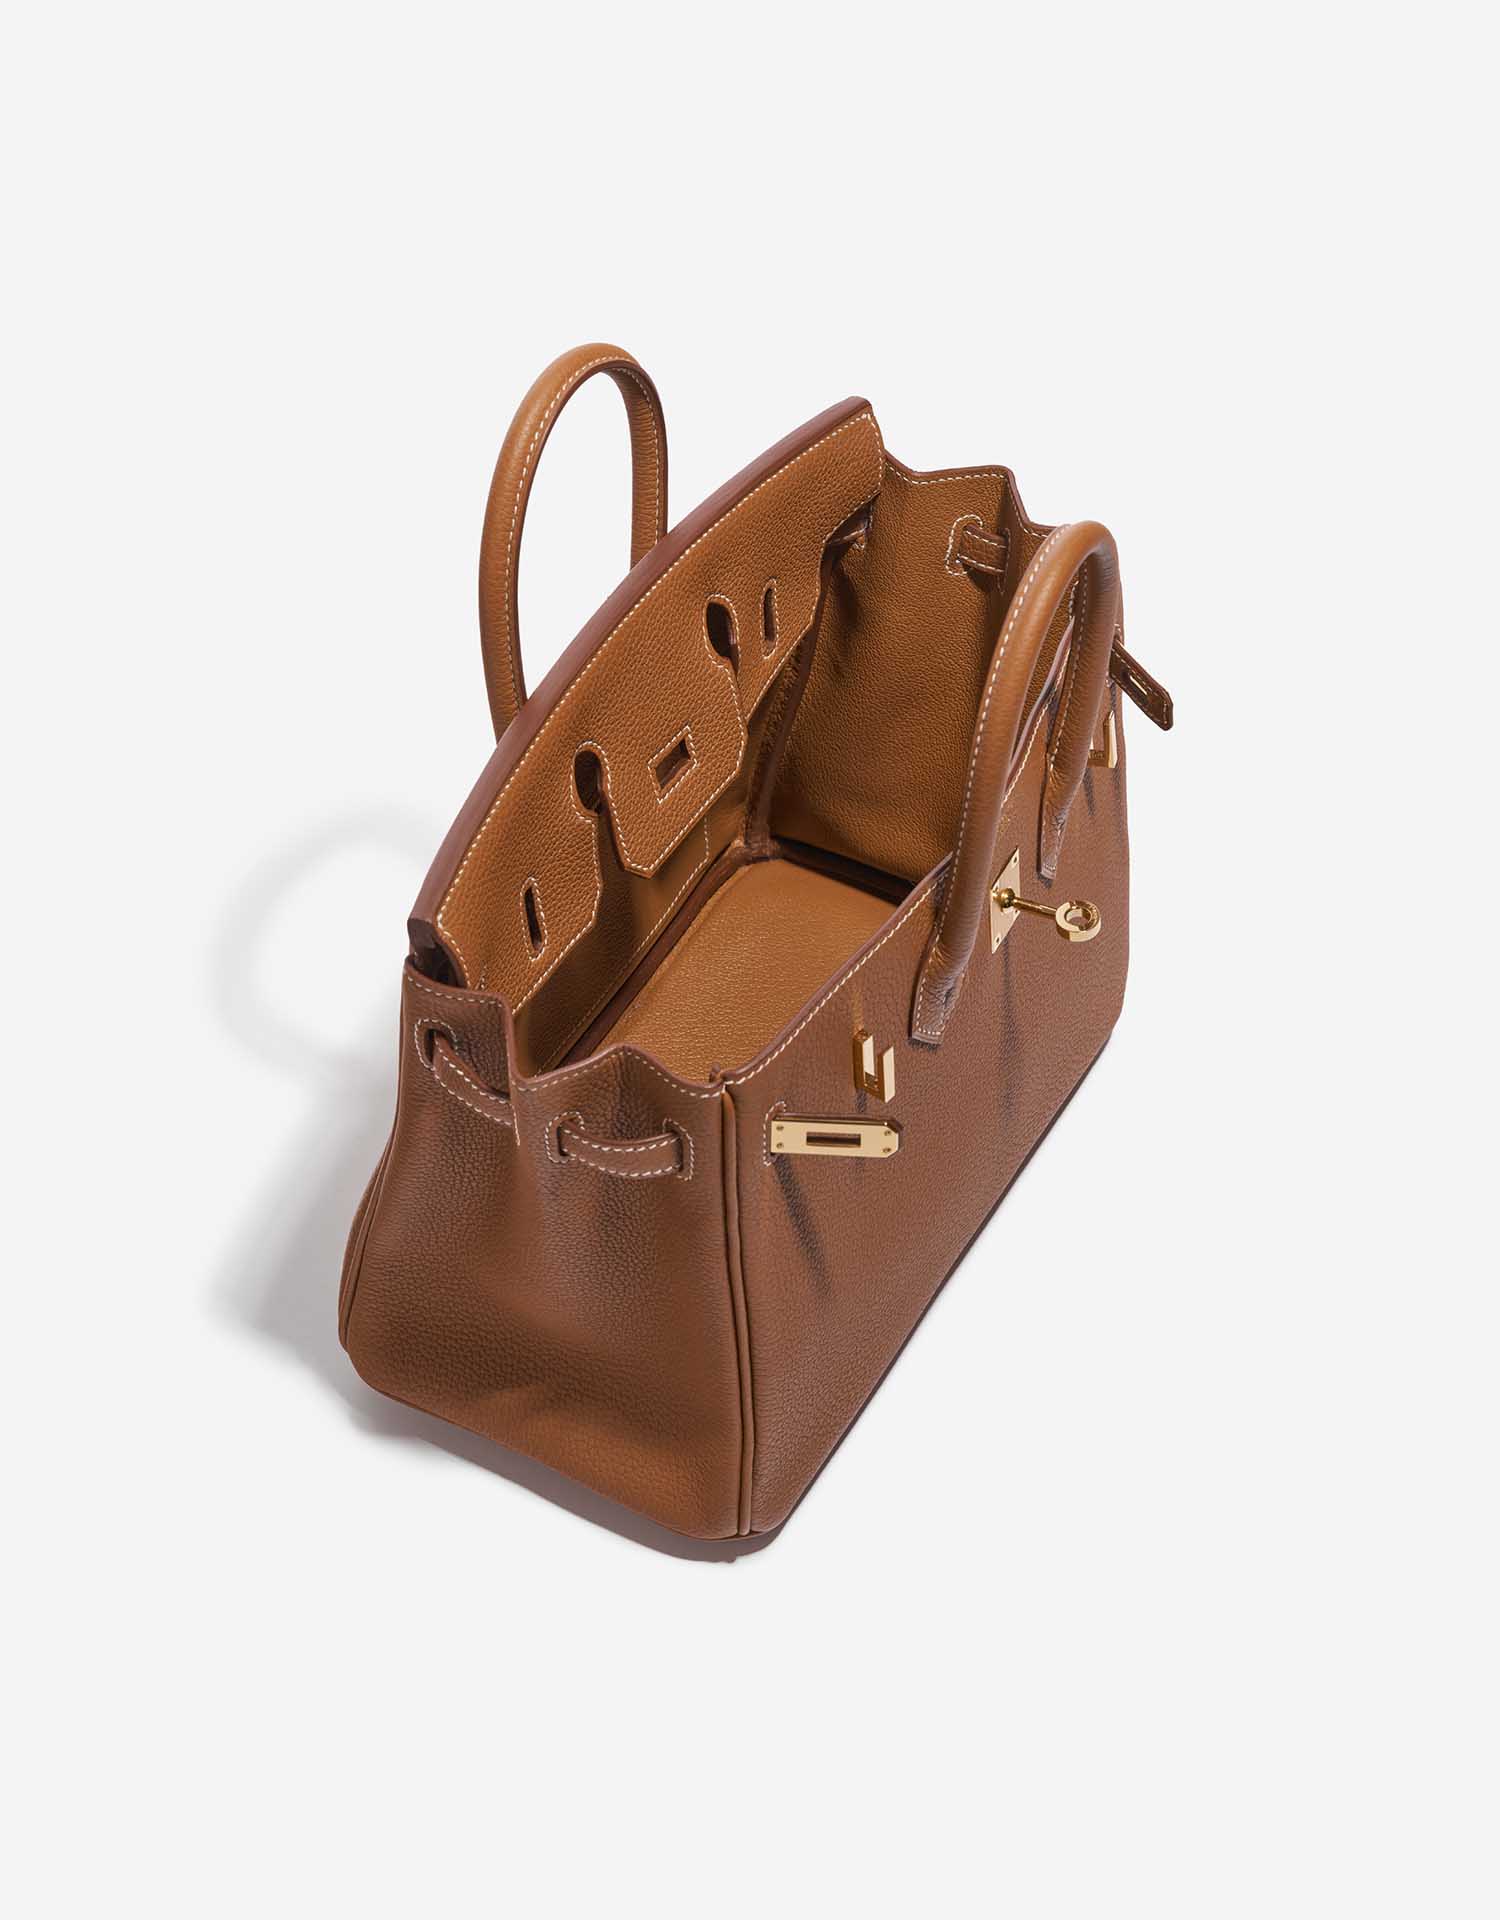 Hermès Birkin 25 bag, in Togo leather, Mushroom color Pa…